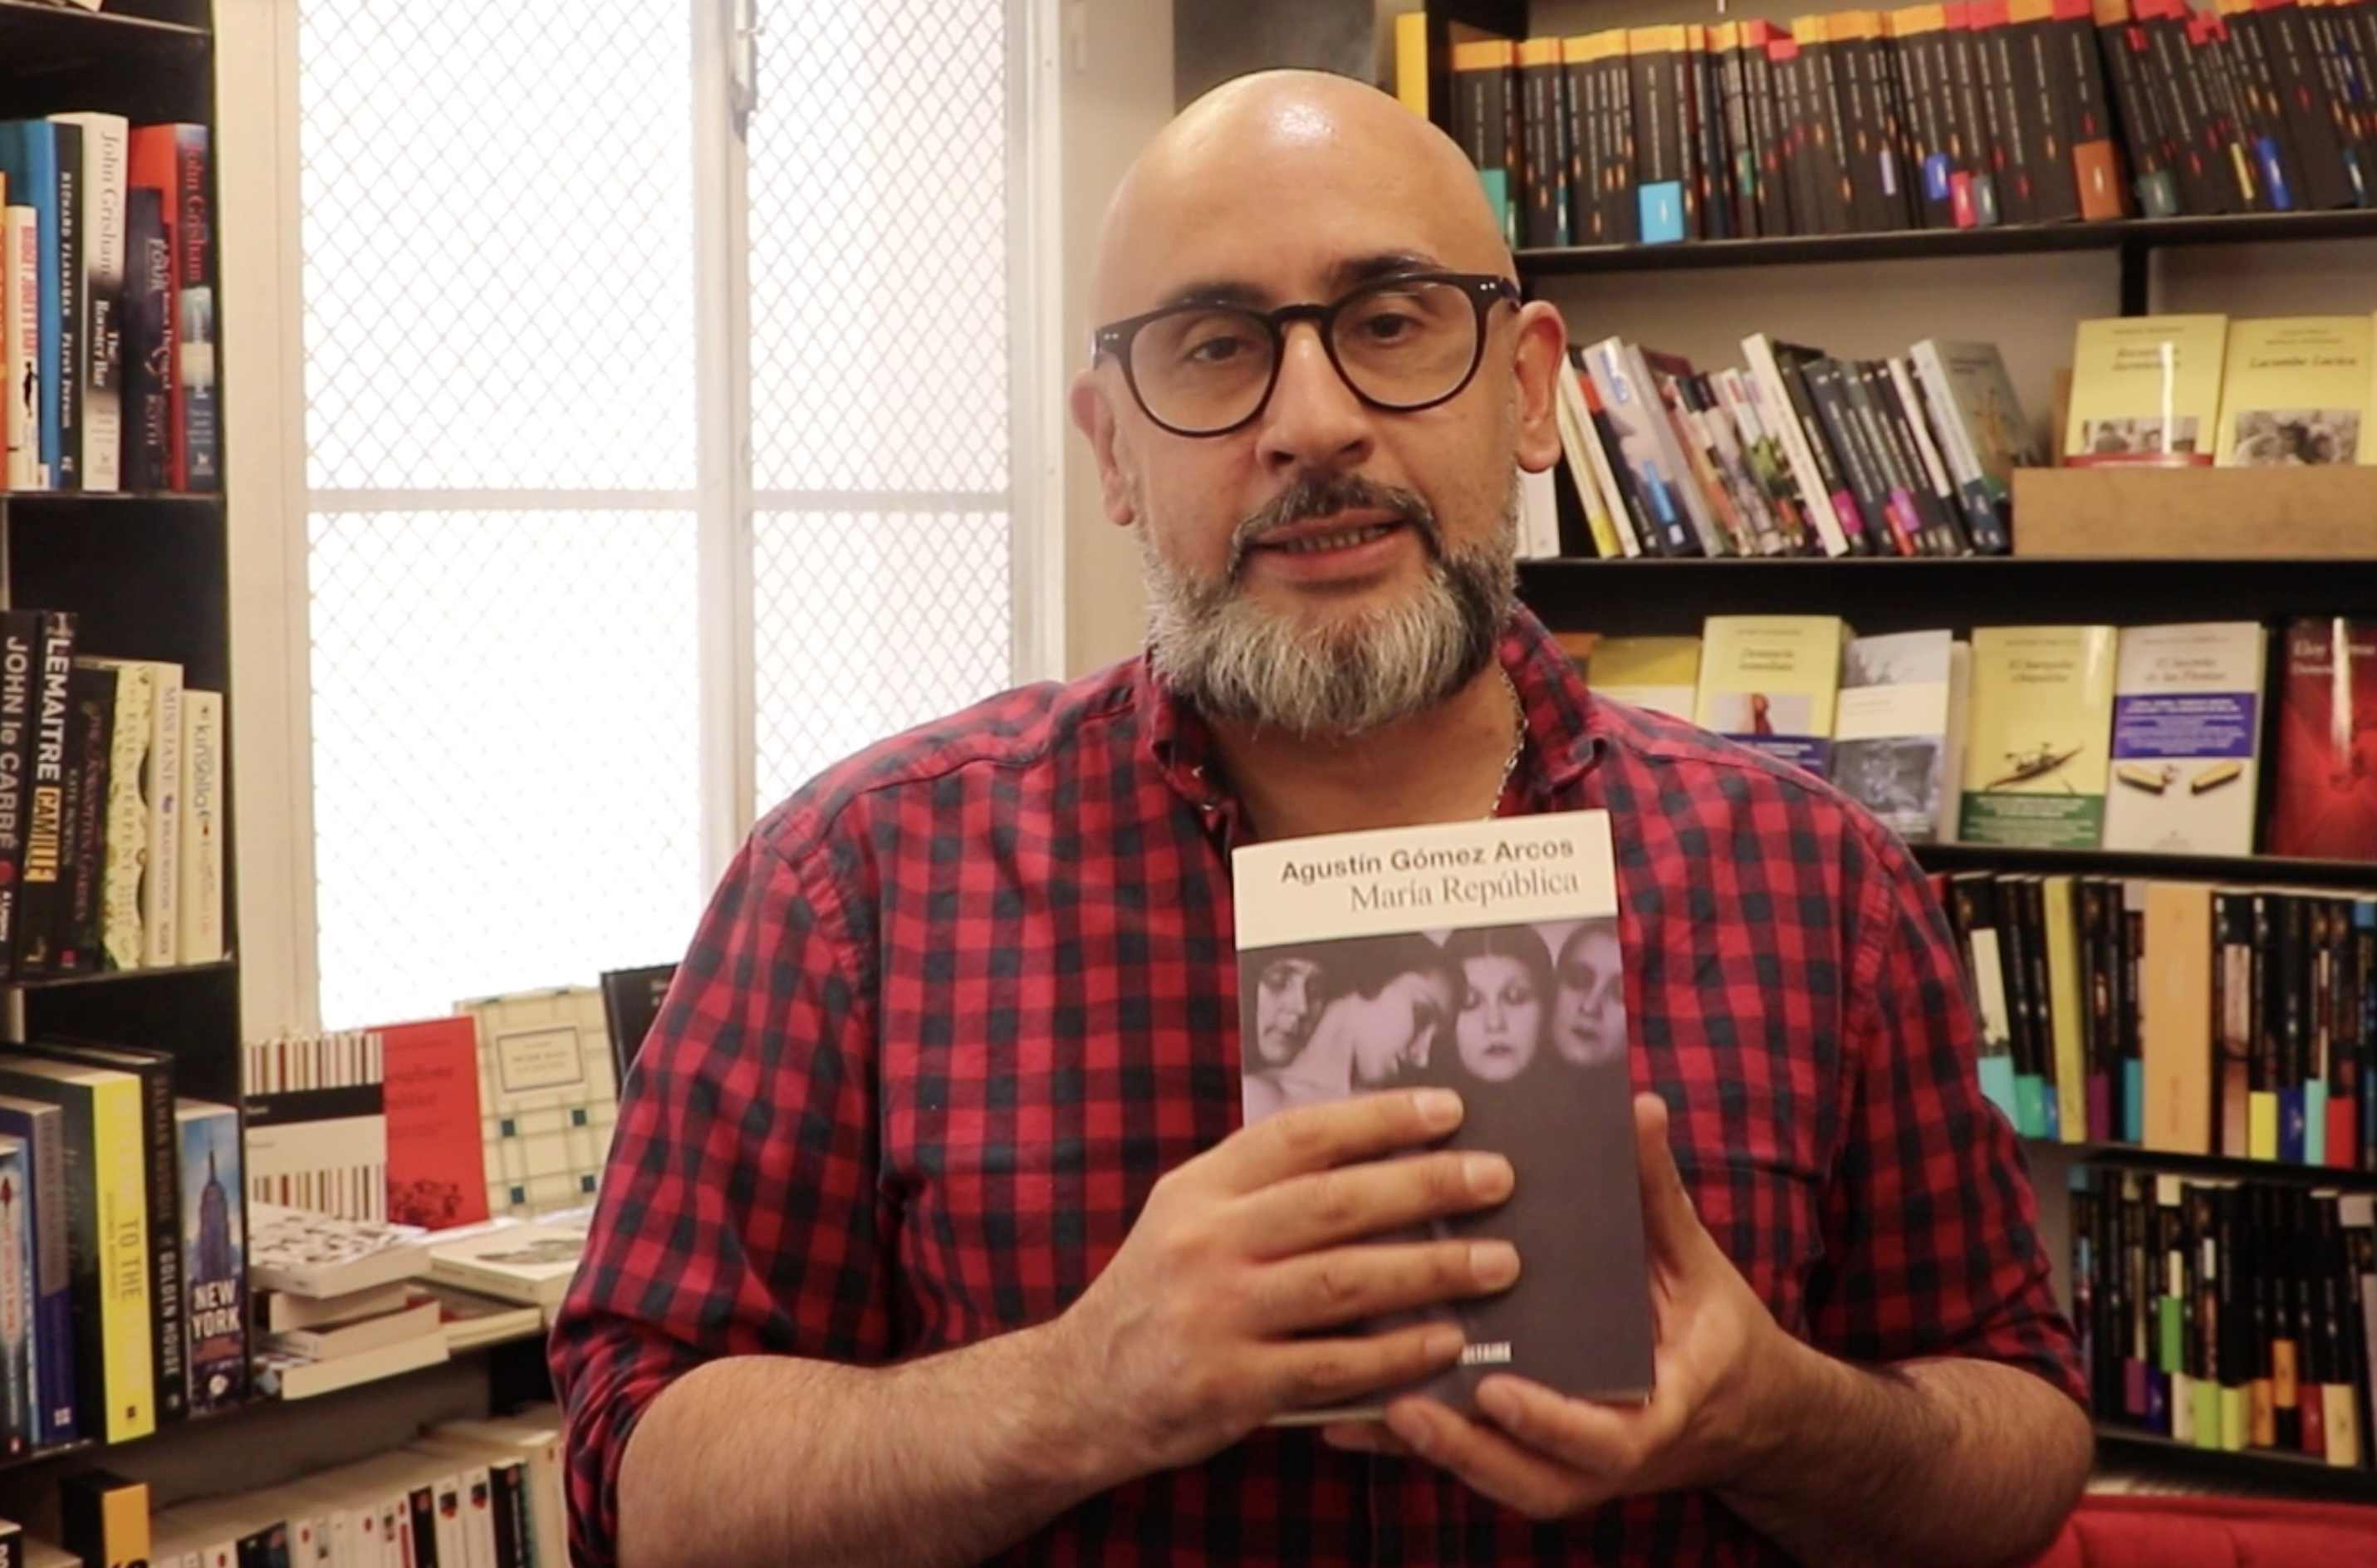 Joaquín Sovila con el libro María República de Agustín Gómez Arcos. 